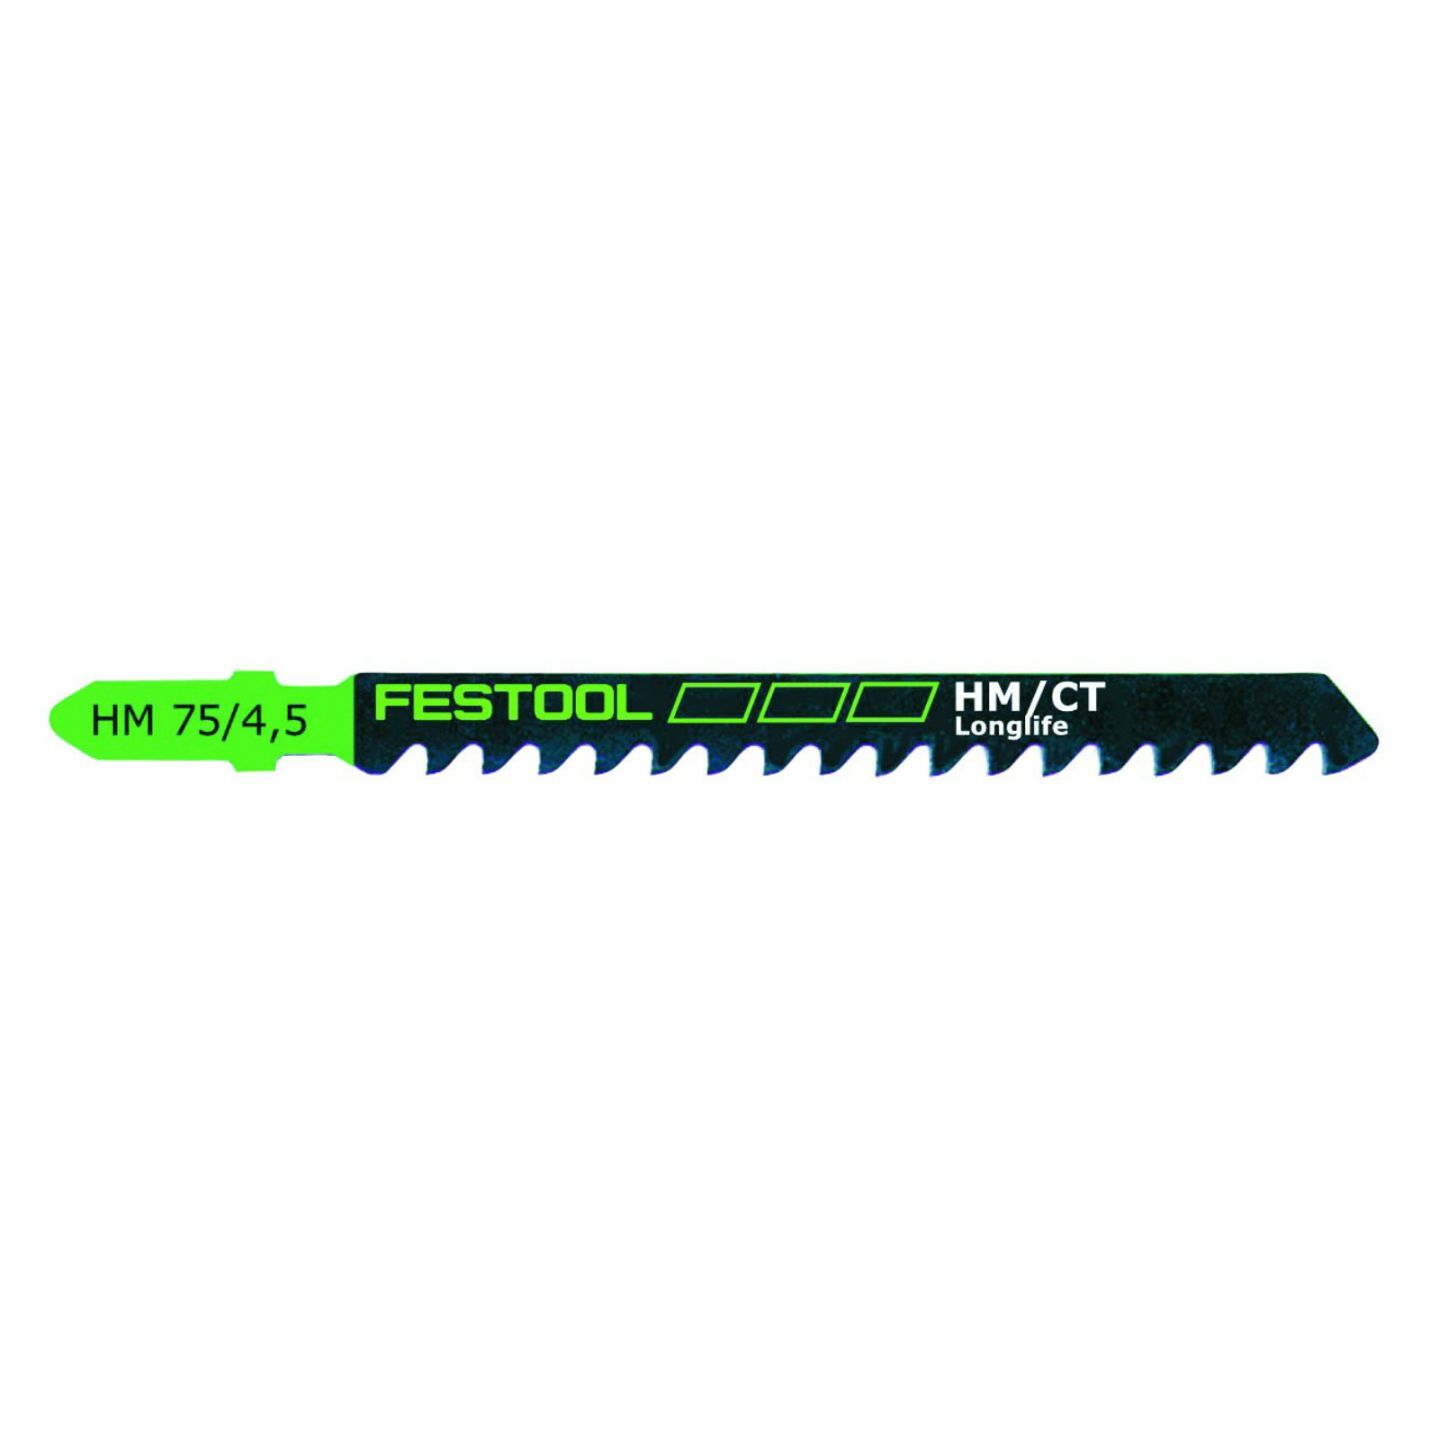 Festool Jigsaw Blade HM 75/4.5 (486561)